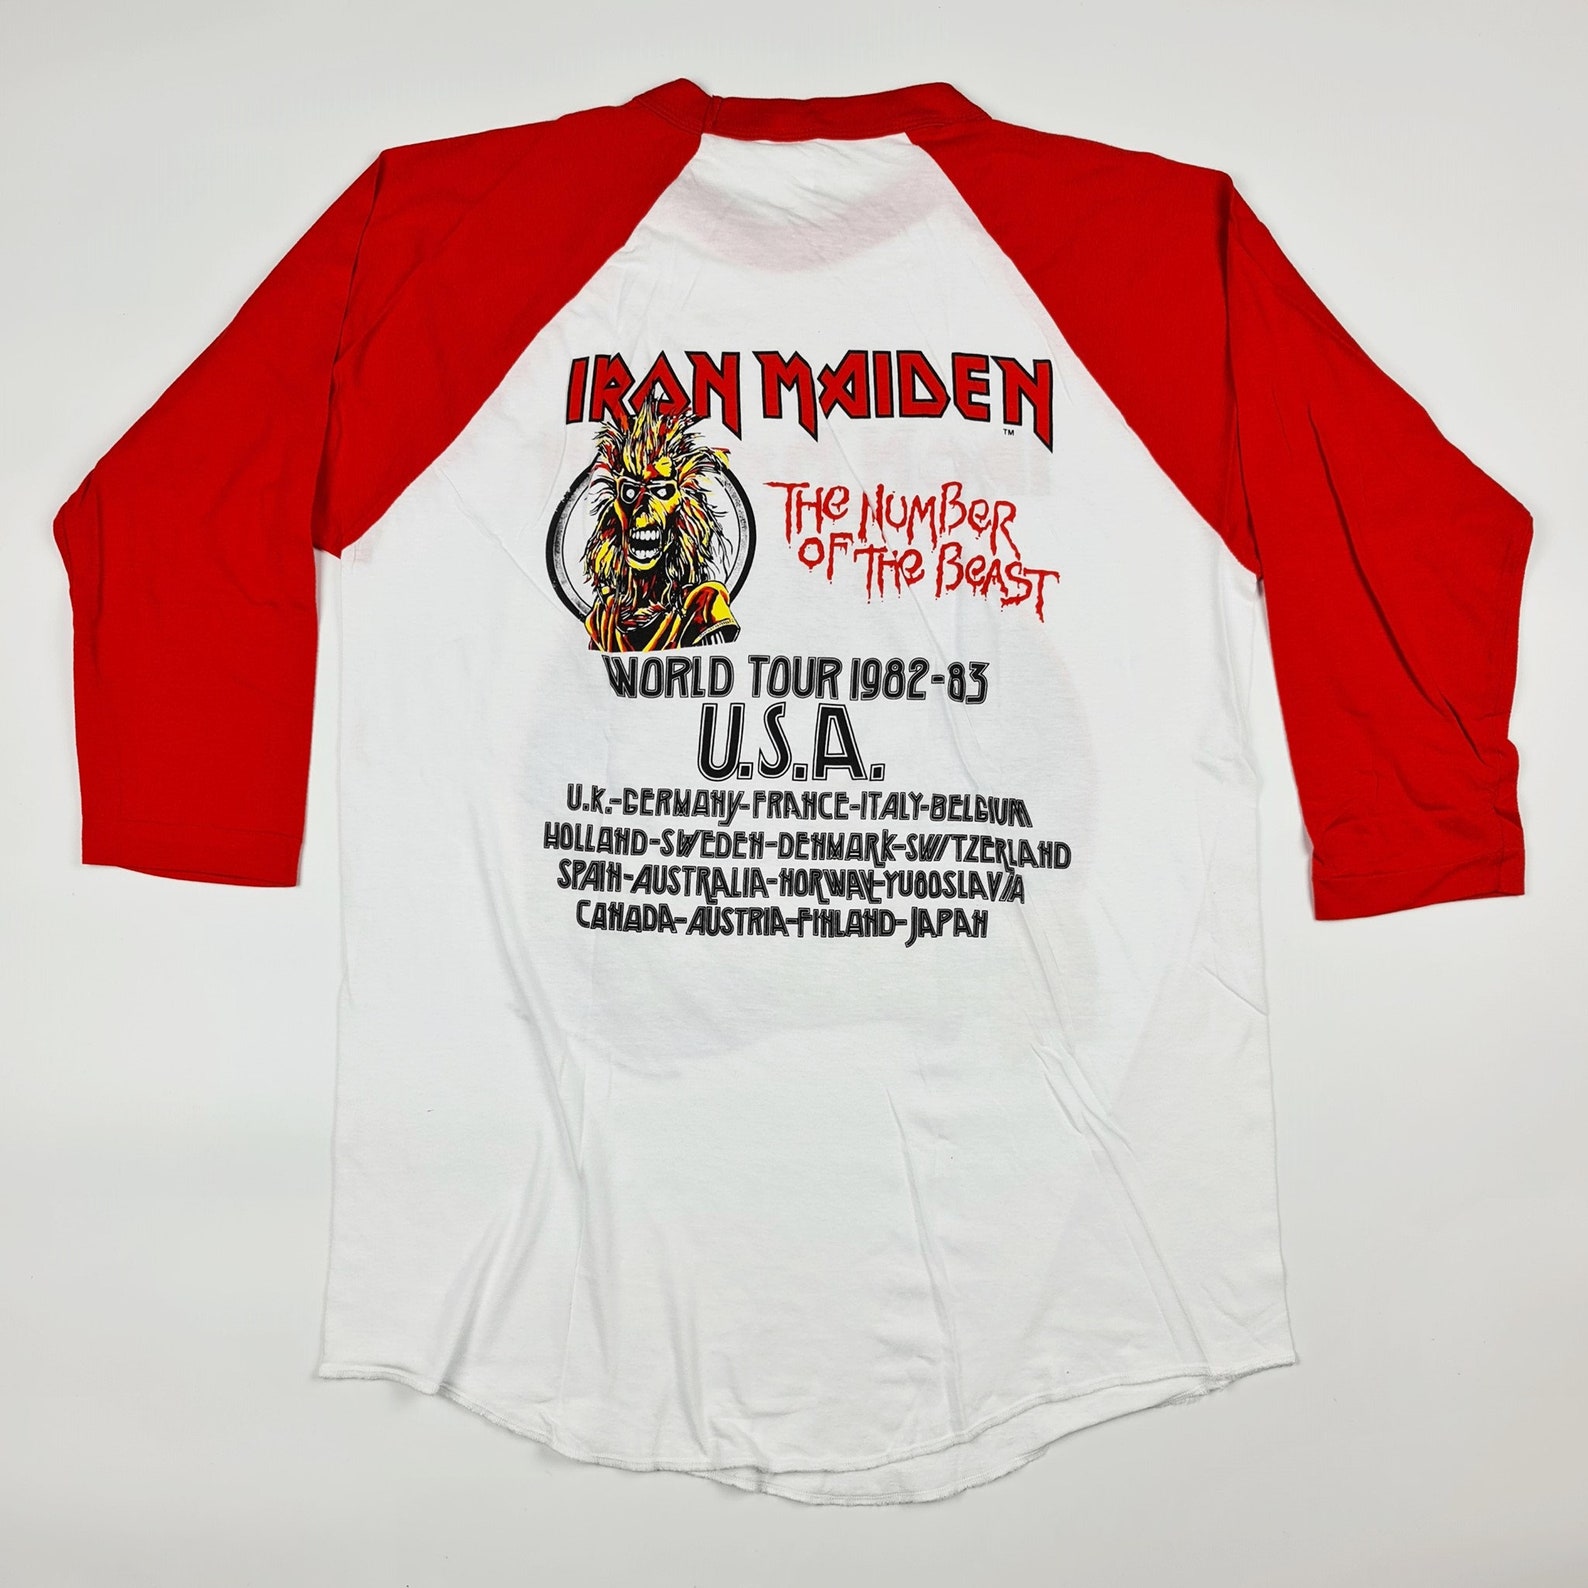 Retro Iron Maiden World Tour 1982-83 T-shirt Three-Quarter | Etsy